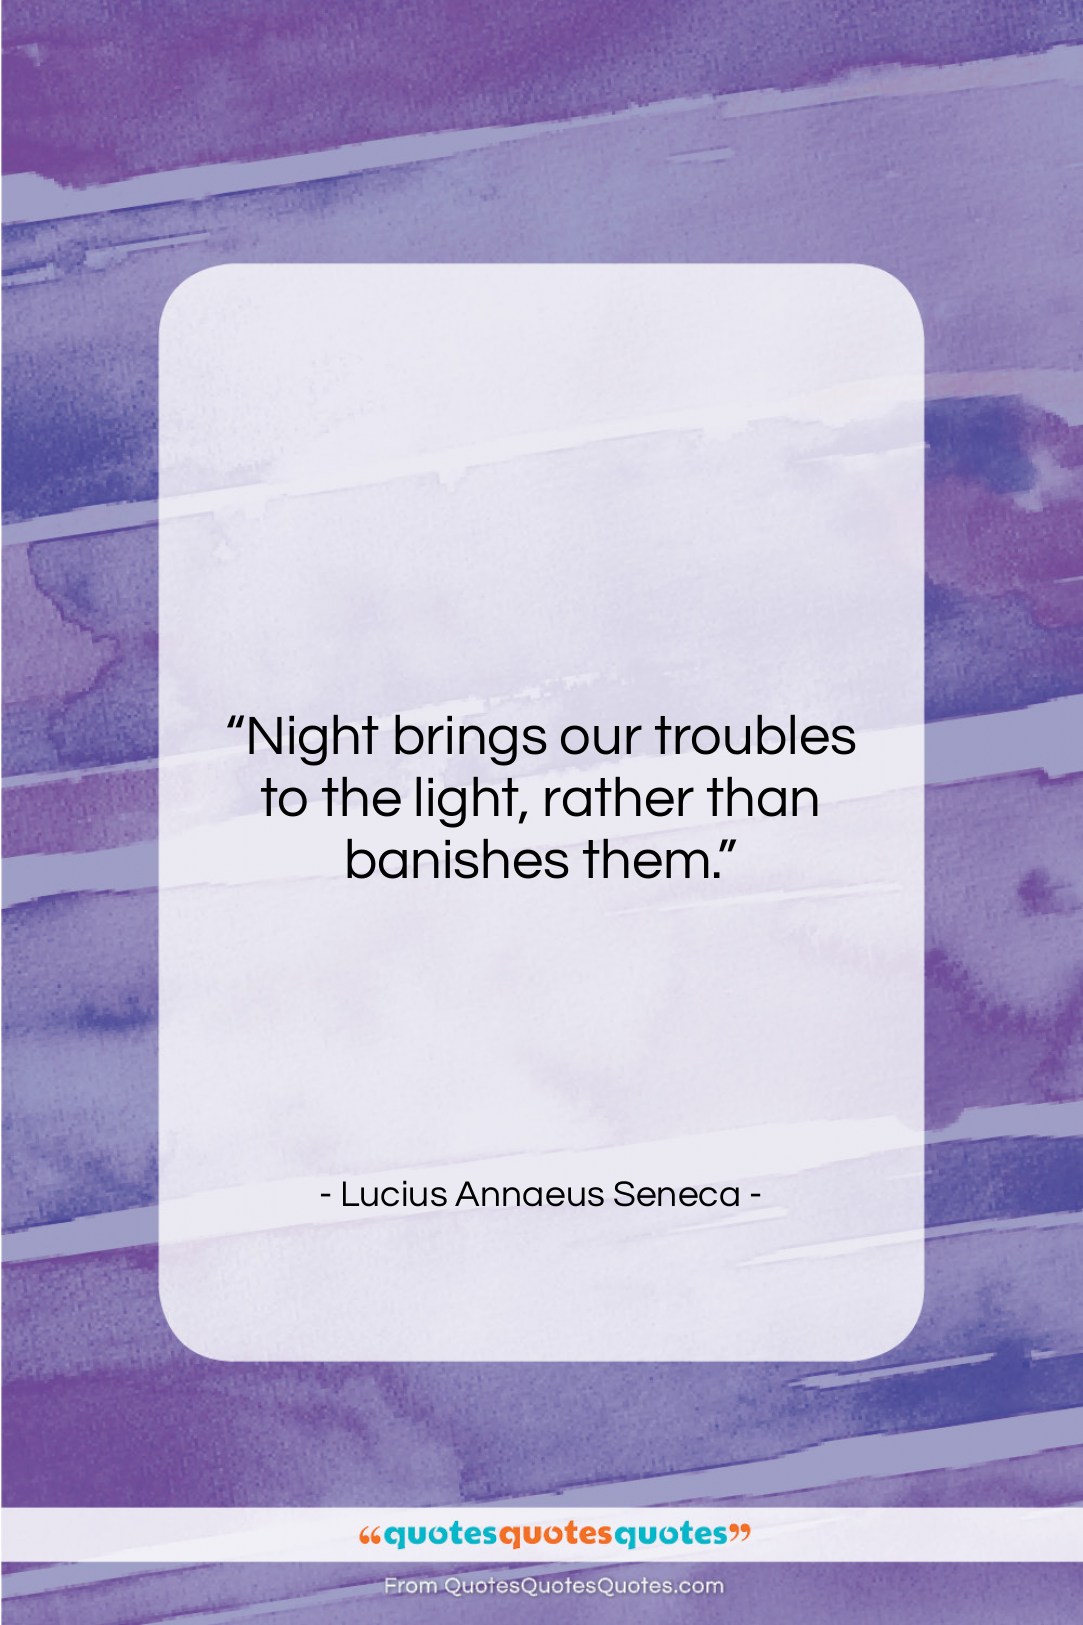 Lucius Annaeus Seneca quote: “Night brings our troubles to the light,…”- at QuotesQuotesQuotes.com